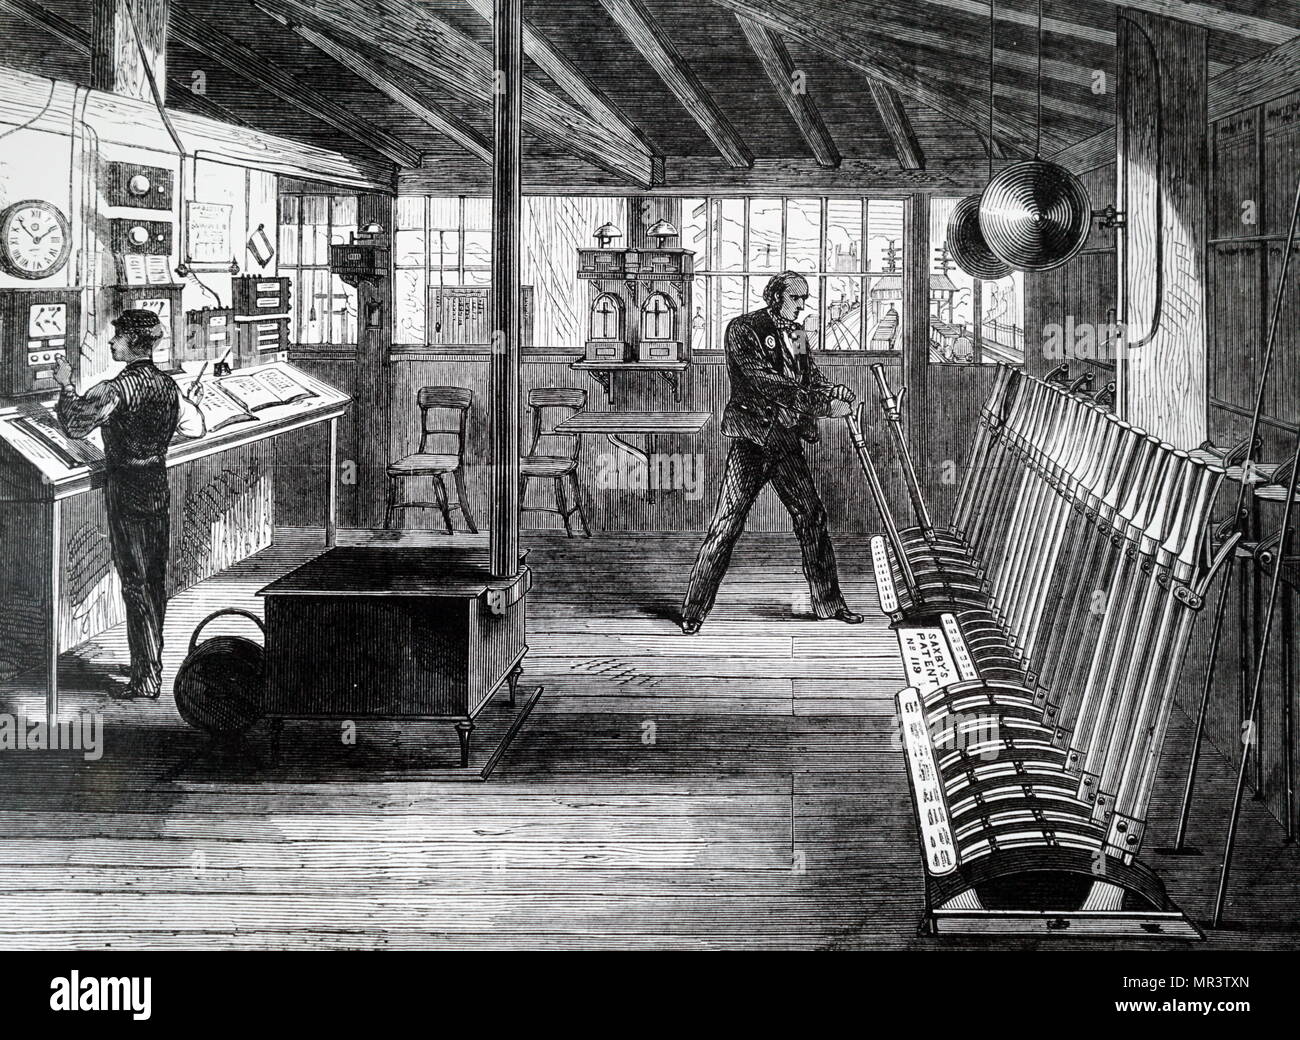 Ilustración mostrando una señal de verificación, utilizado para comunicarse con los trenes y otras cajas de señal, en la estación de London Bridge. Fecha del siglo XIX Foto de stock